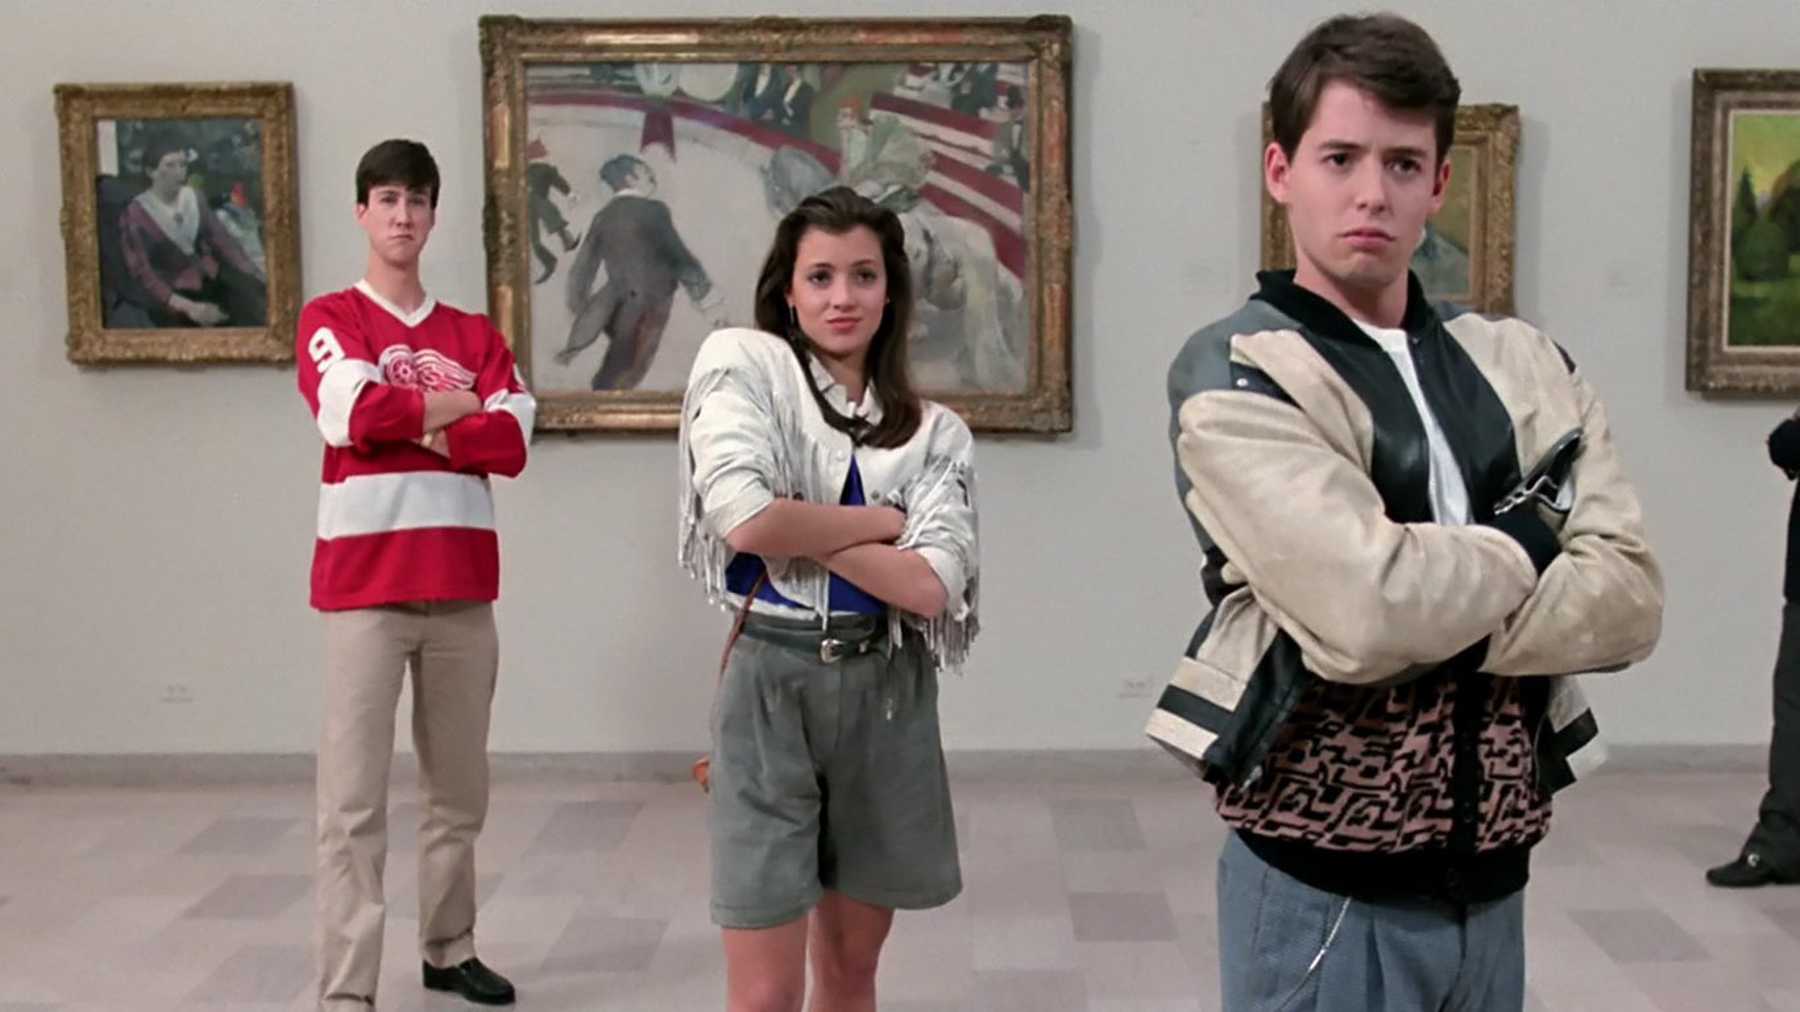 Where Was Ferris Bueller’s Day Off Filmed?